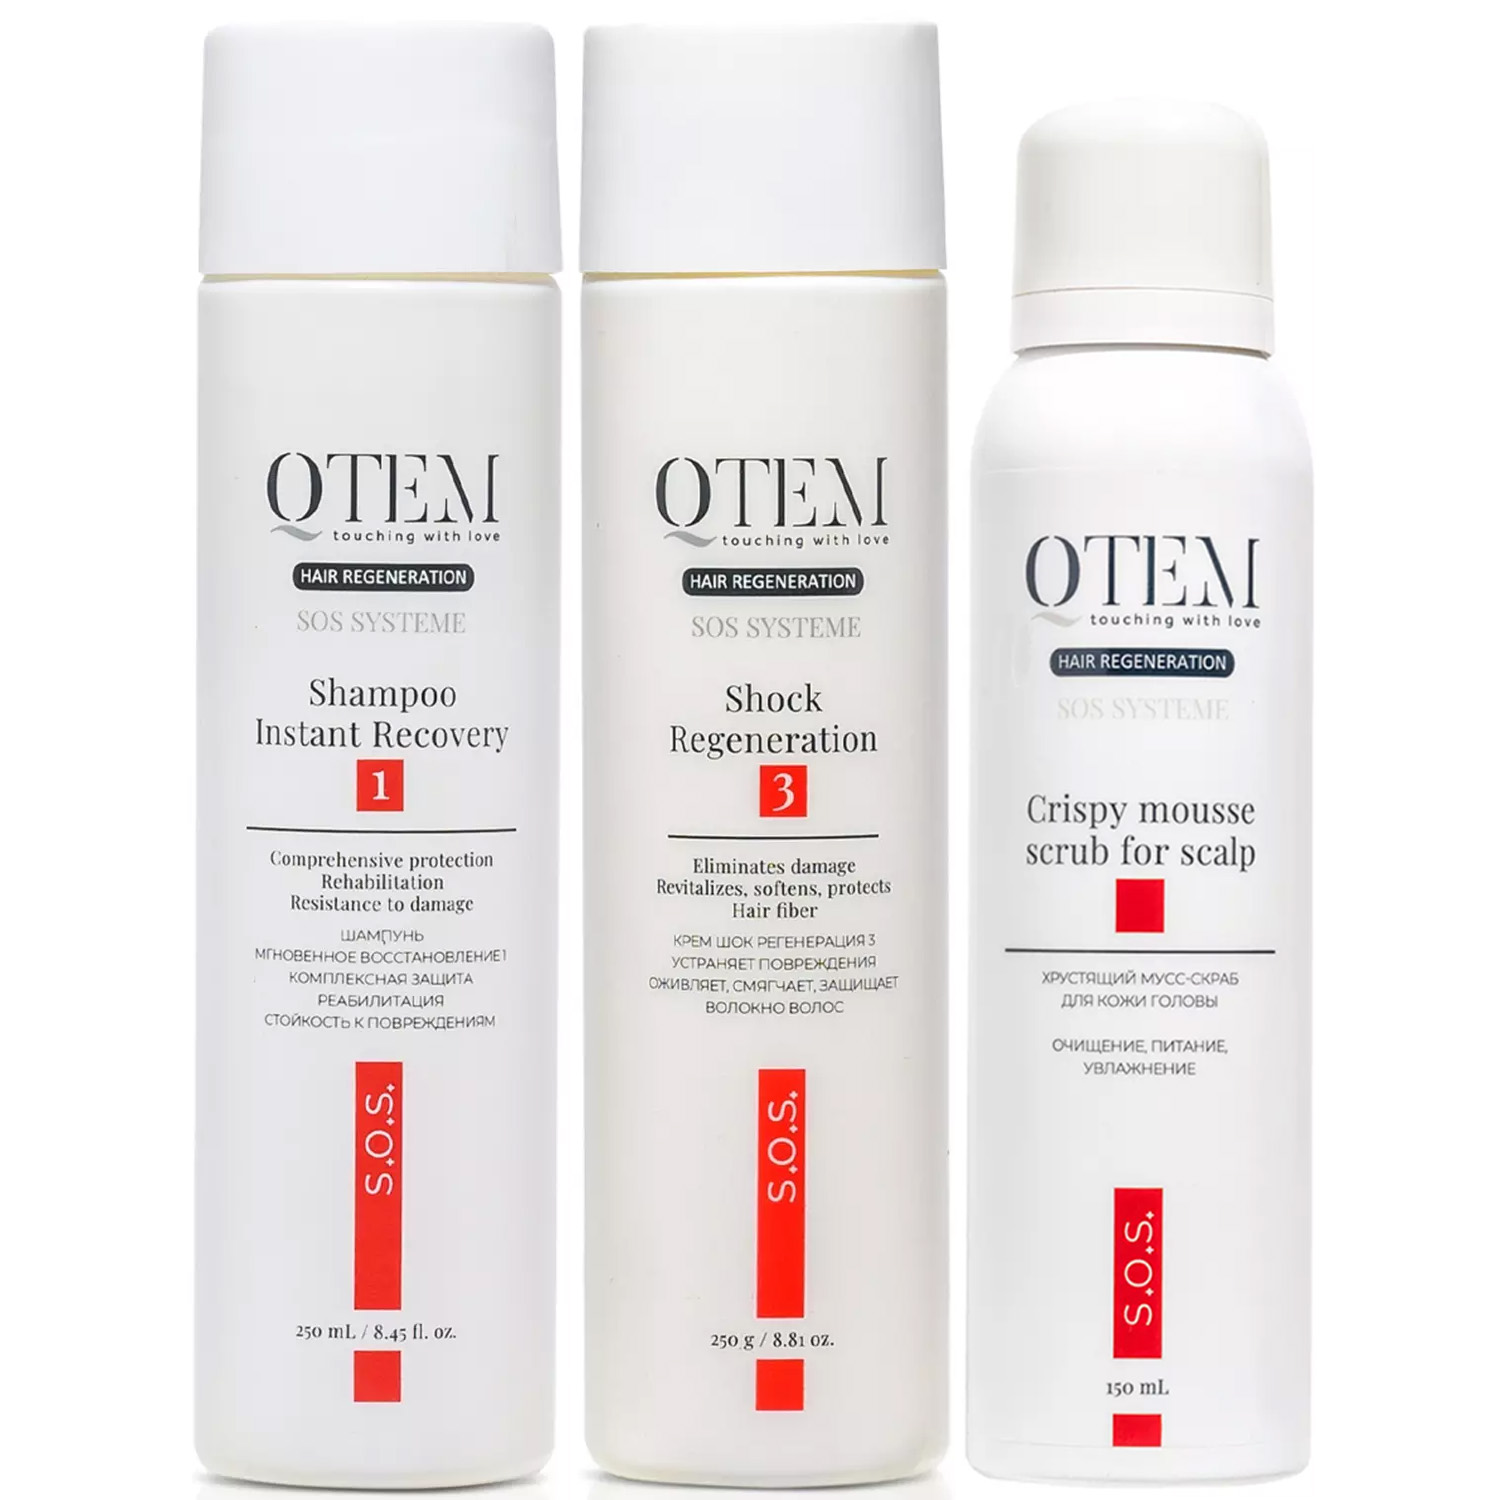 Qtem Набор для интенсивного восстановления волос: шампунь 250 мл + крем-маска 250 г + скраб 150 мл (Qtem, Hair Regeneration) цена и фото